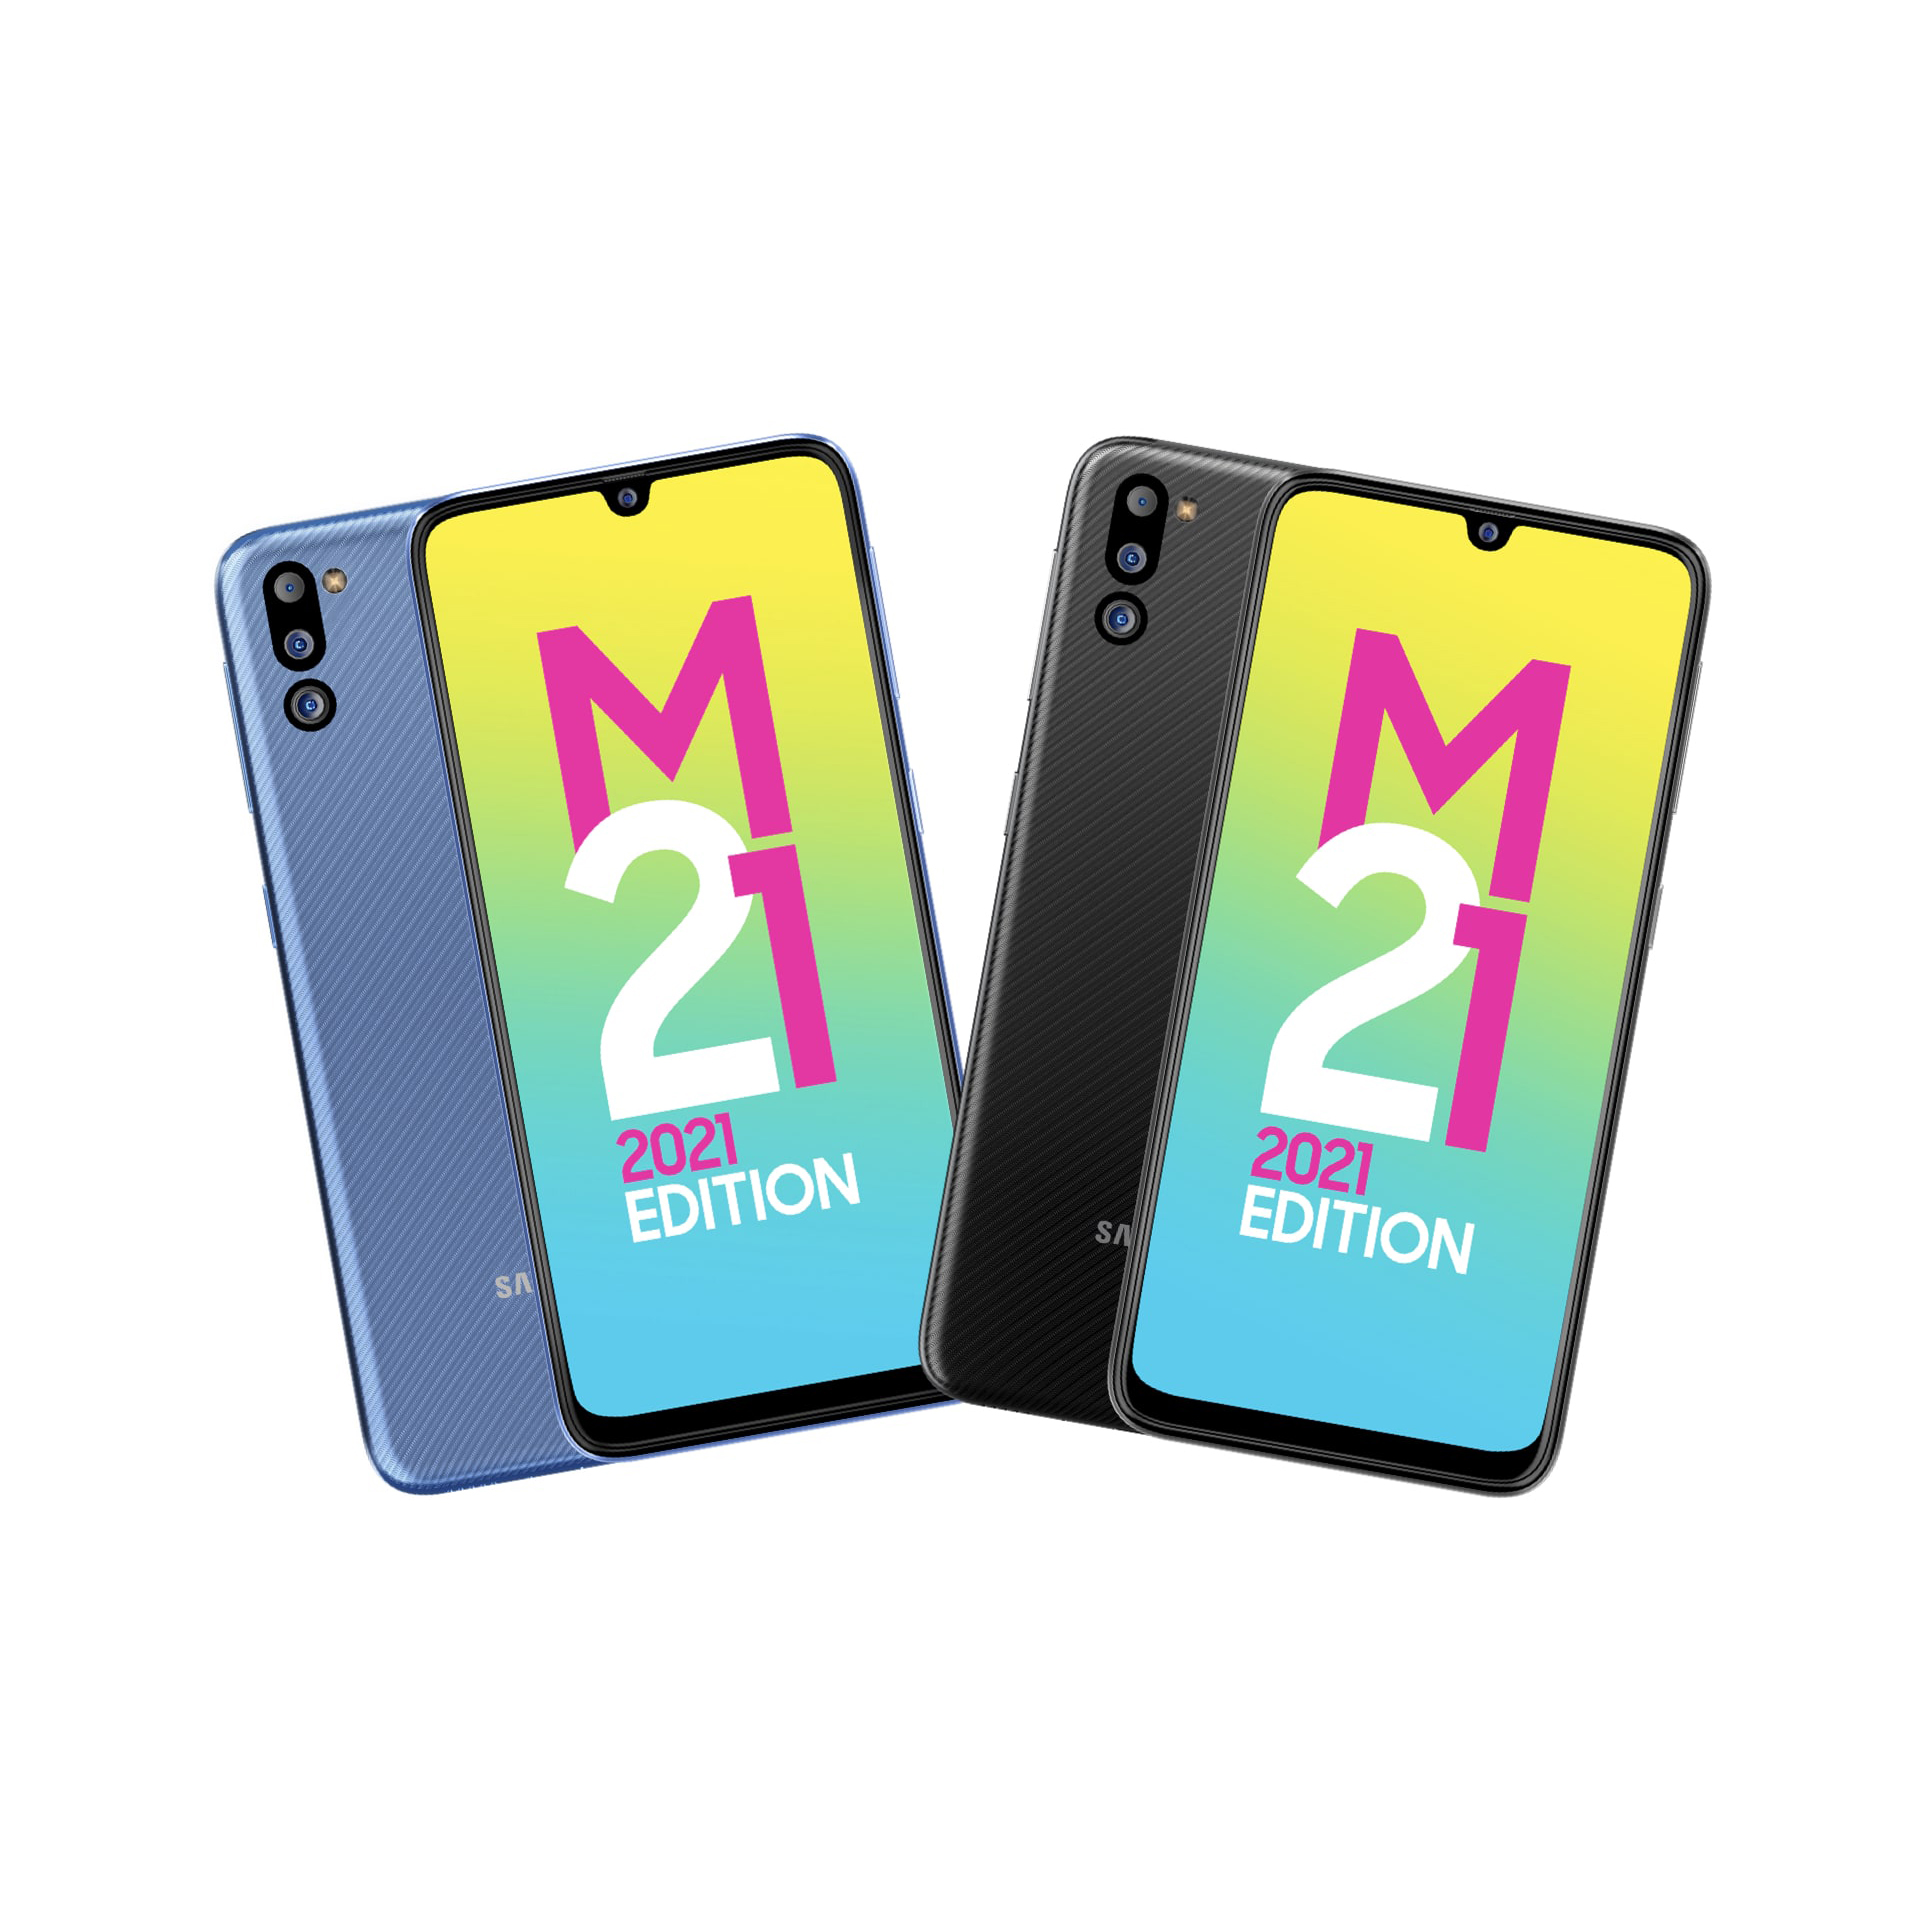 مشخصات، قیمت و خرید گوشی موبایل سامسونگ مدل Galaxy M21 2021 ...